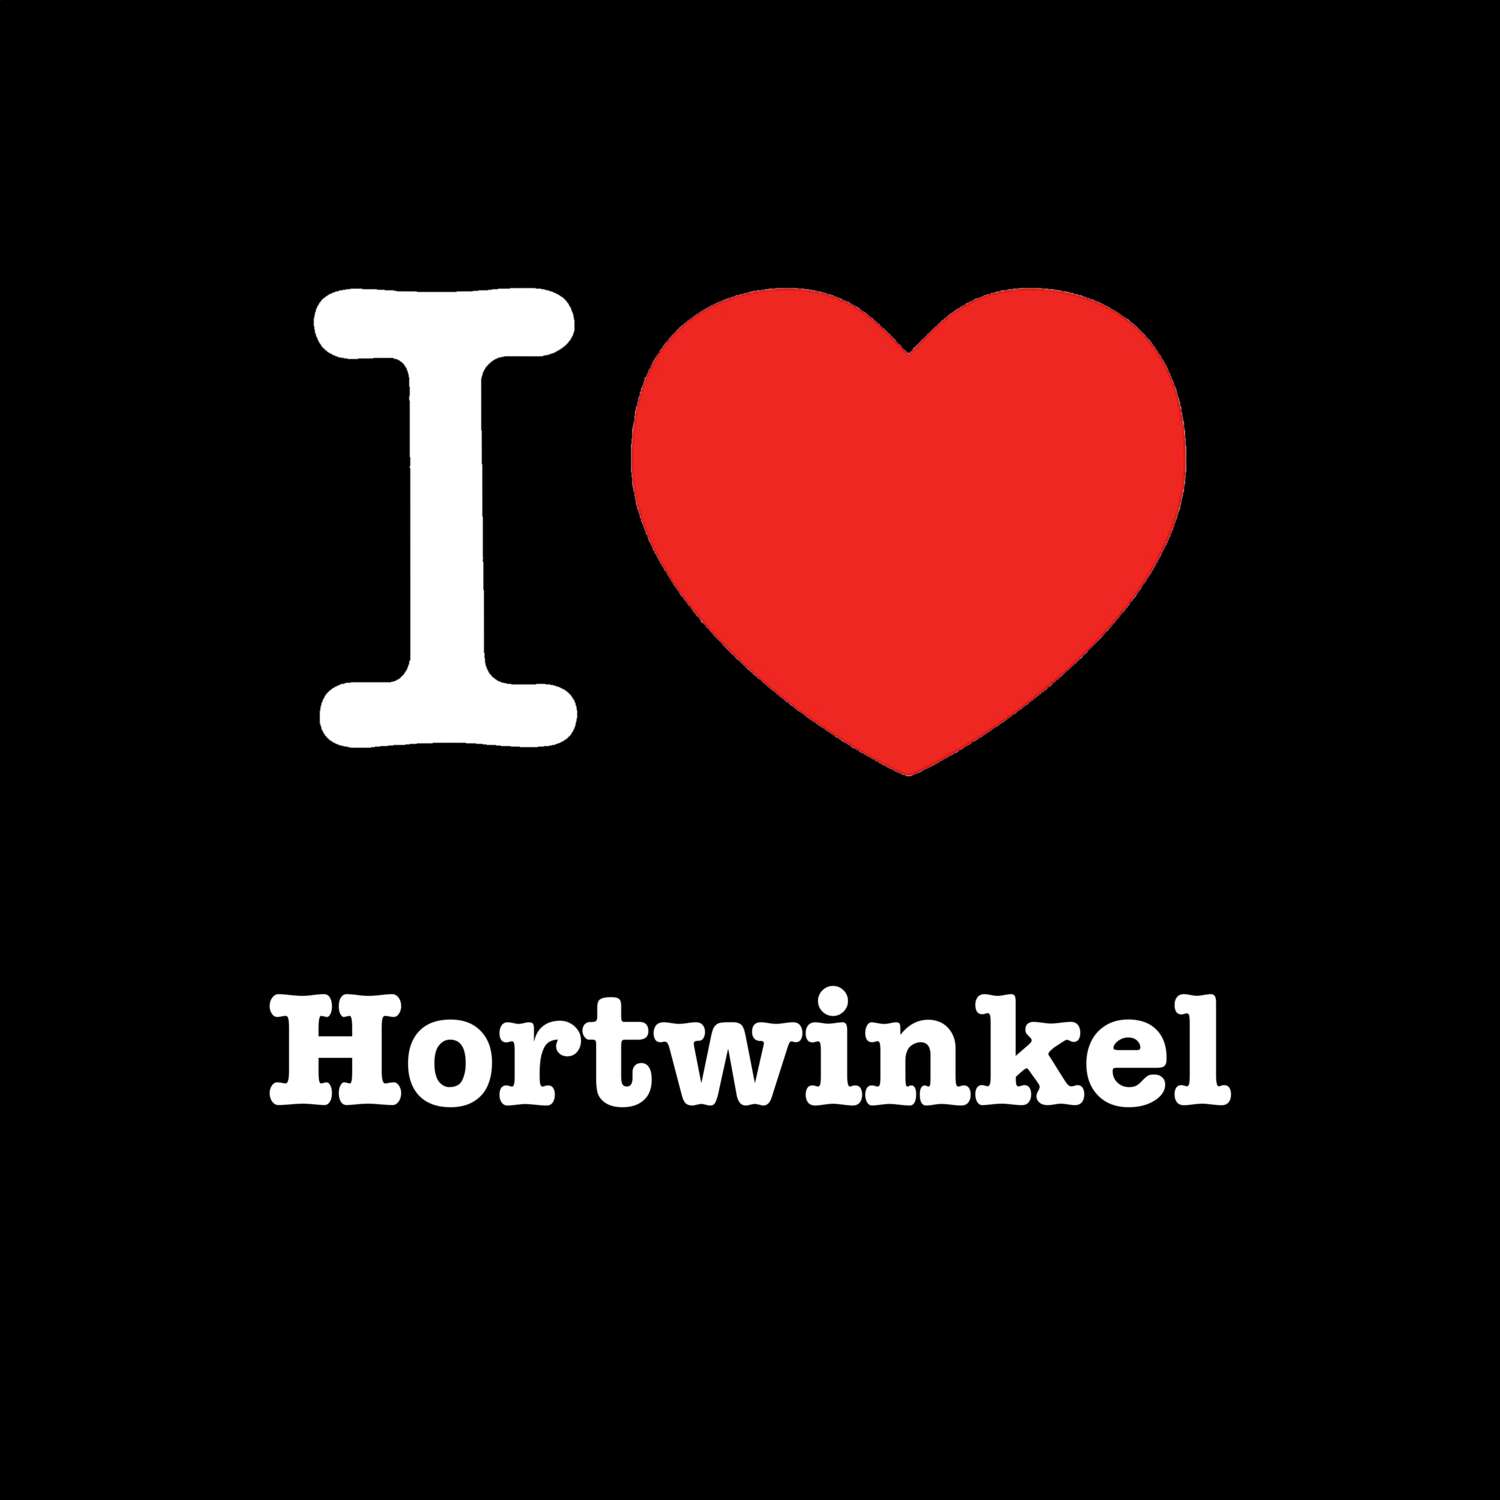 Hortwinkel T-Shirt »I love«